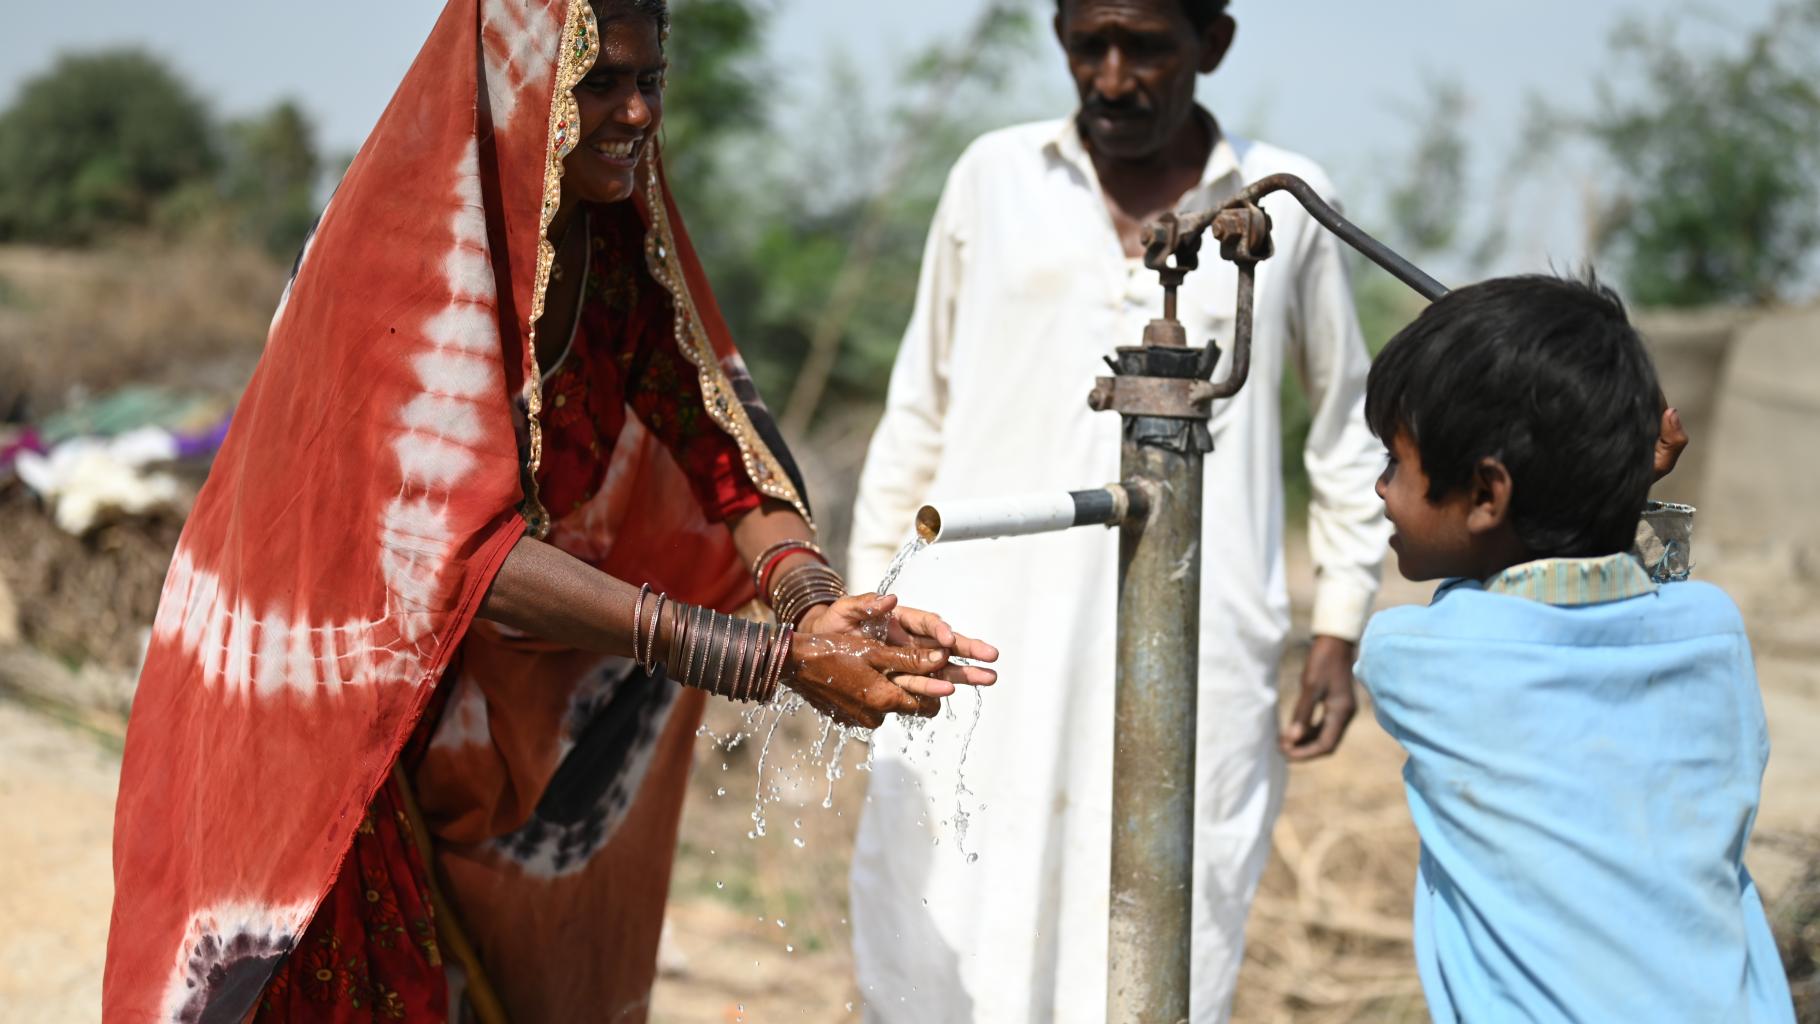 Eine Familie benutzt eine neu installierte Hand-Wasserpumpe. Das Kind (rechts) bedient die Pumpe, während die Mutter (links) ihre Hände unter den Wasserstrahl hält. Im Hintergrund steht eine dritte Person.